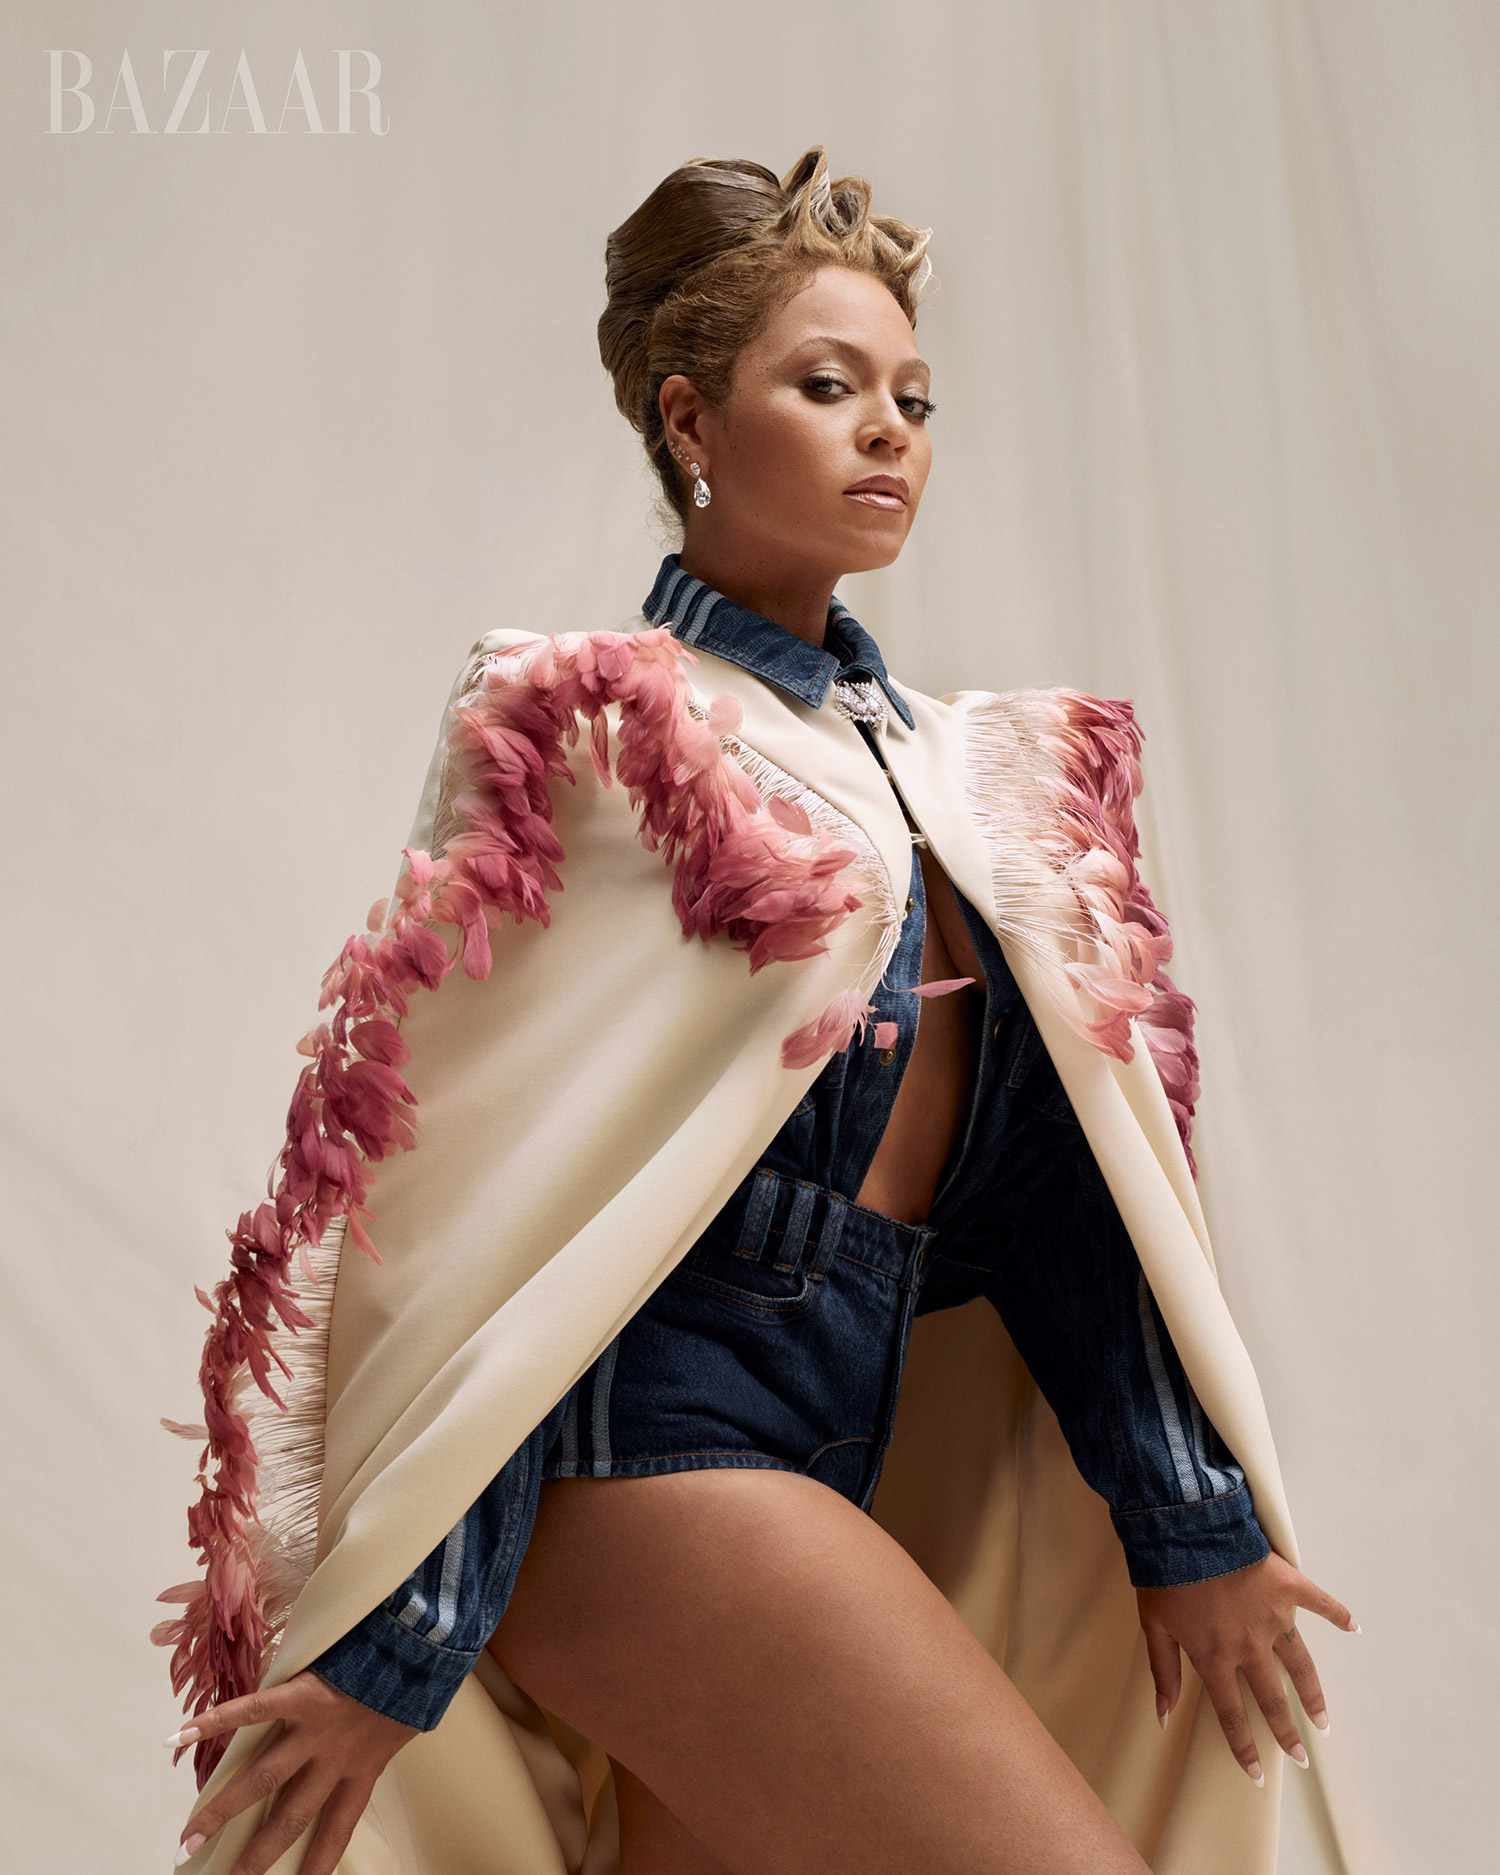 Beyoncé diz que novas músicas estão a caminho: 'I Feel a Renaissance Emerging'